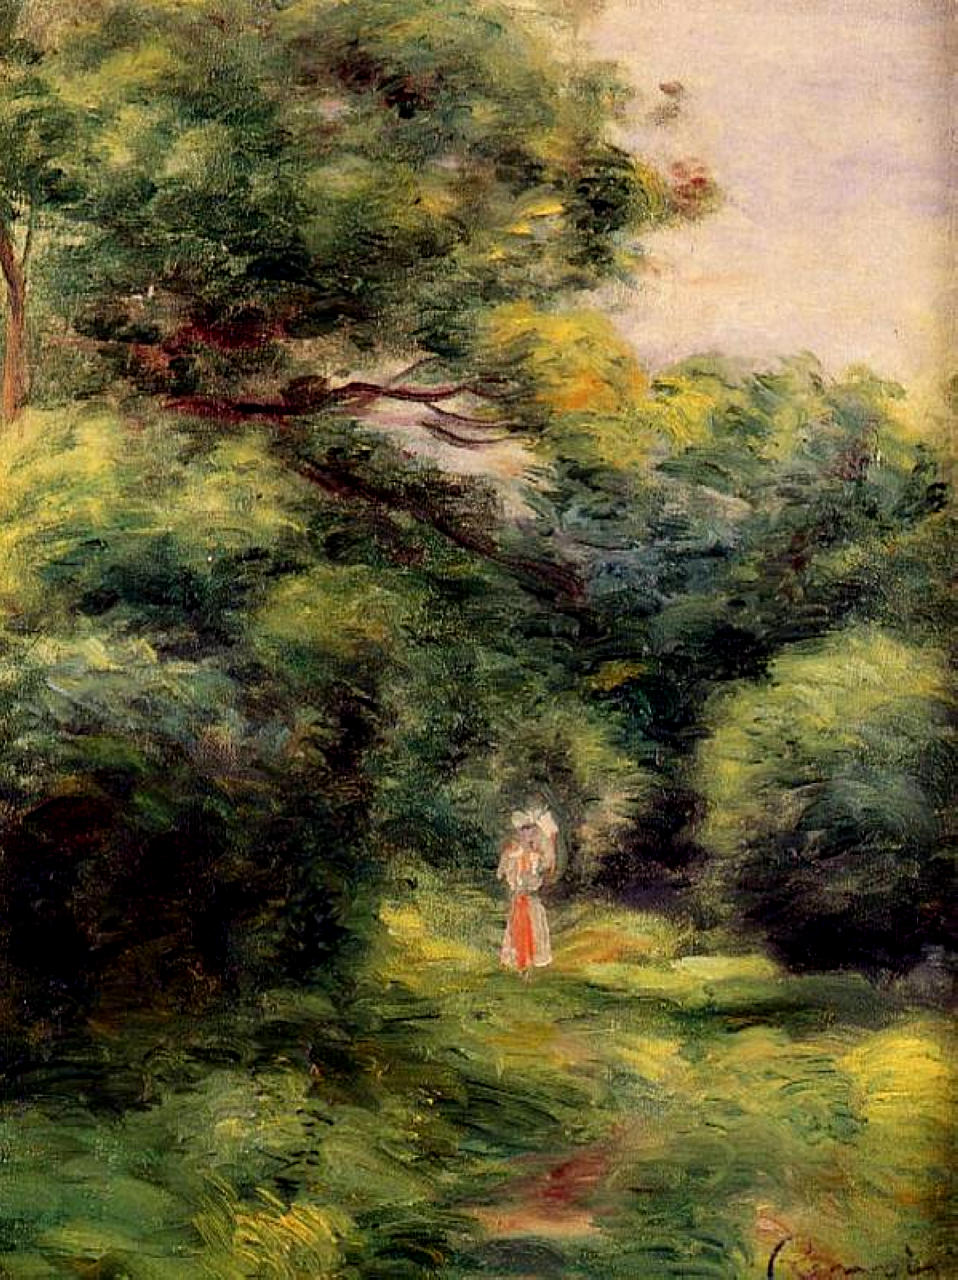 Pierre+Auguste+Renoir-1841-1-19 (543).jpg